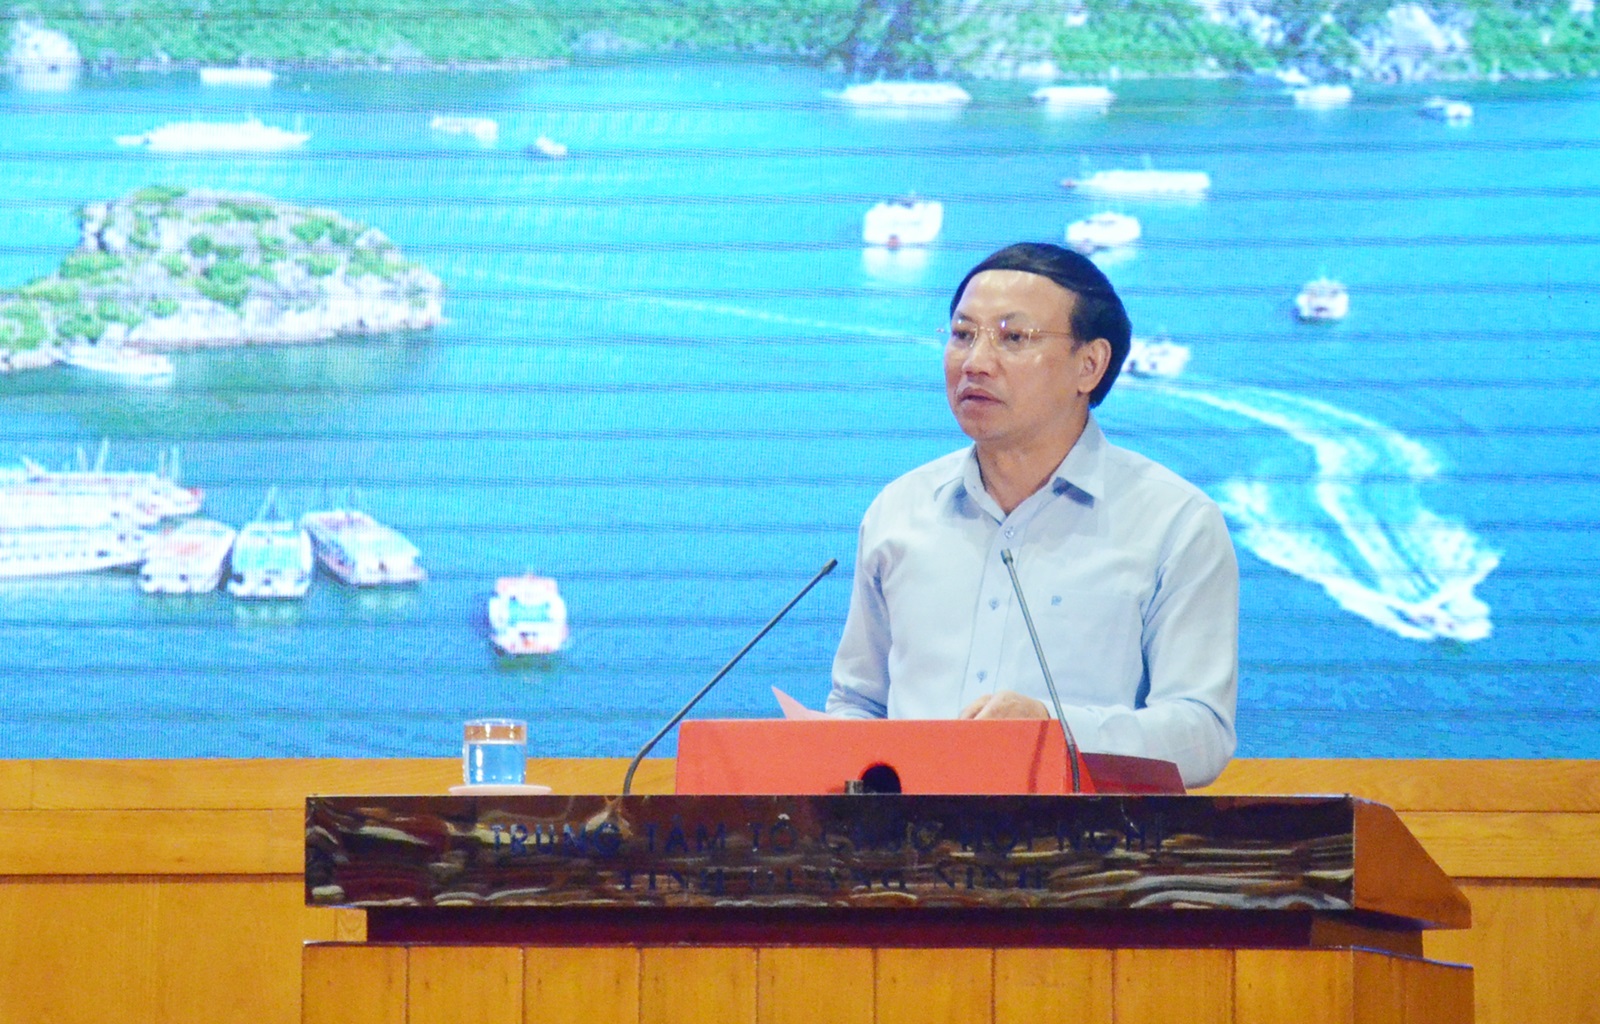 Đồng chí Nguyễn Xuân Ký, Bí thư Tỉnh ủy, Chủ tịch HĐND tỉnh phát biểu tại buổi gặp mặt.